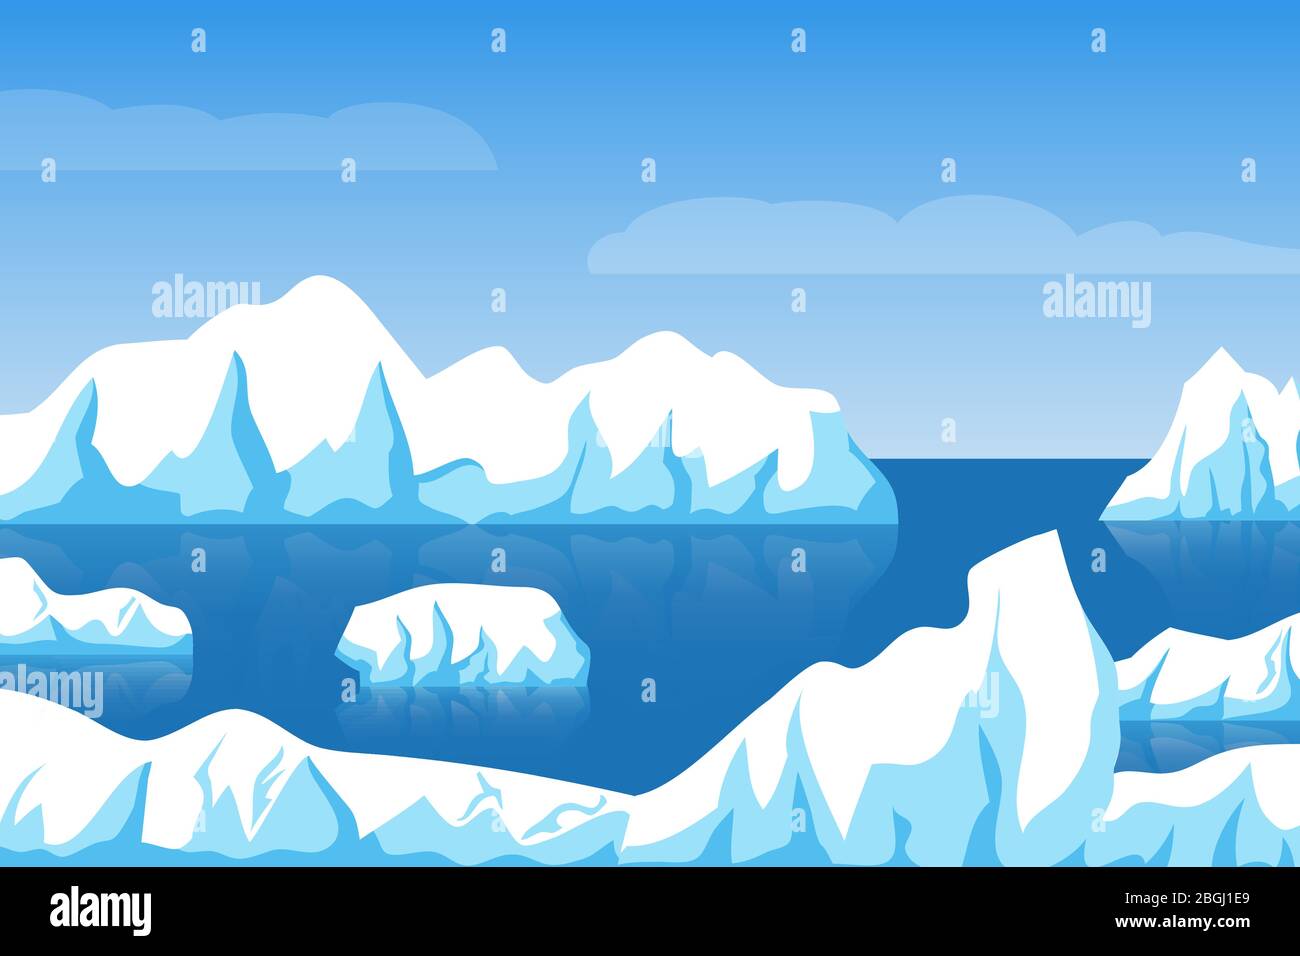 Dessin animé hiver polaire arctique ou antarctique paysage de glace avec iceberg dans l'illustration du vecteur de mer. Glace berg dans l'océan, illustration de l'arctique des glaciers Illustration de Vecteur